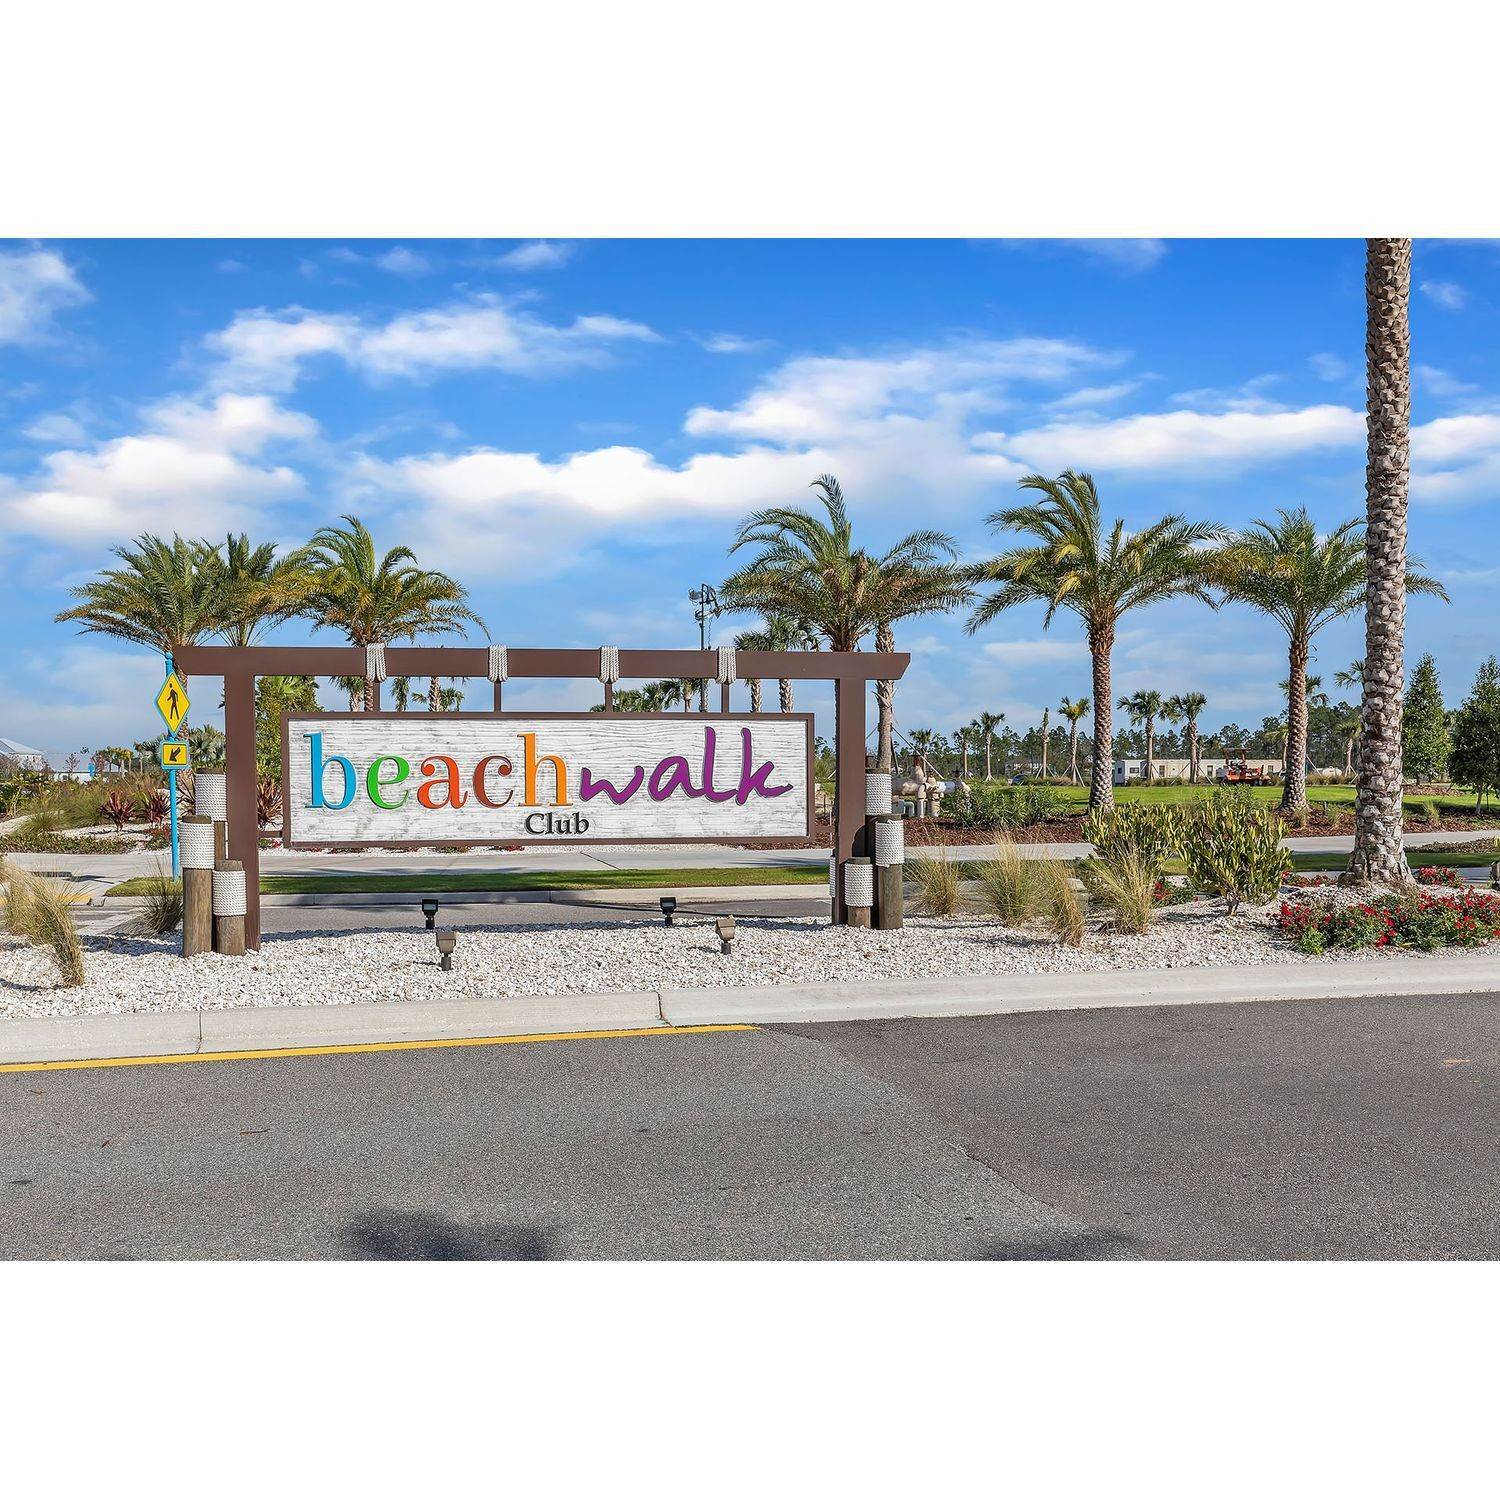 Beachwalk xây dựng tại 117 Rum Runner Way, St. Johns, FL 32259